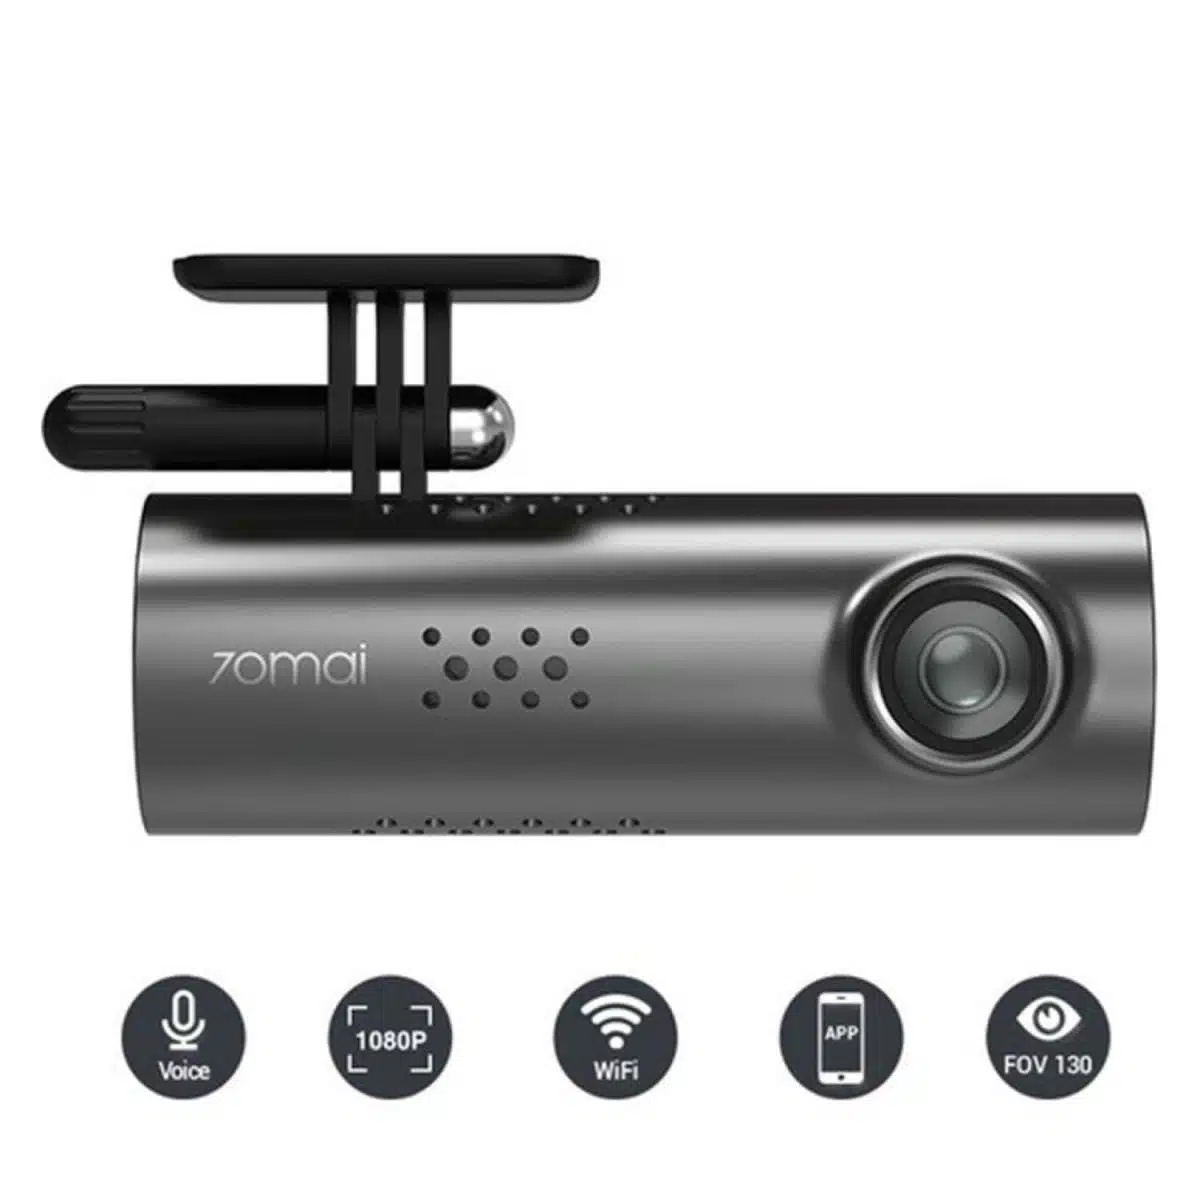 70Mai 1S D06 Akıllı Araç İçi Kamera - 130° Geniş Açı Lens -1080p -Sesli Kontrol - Global Versiyon gösterilmektedir.